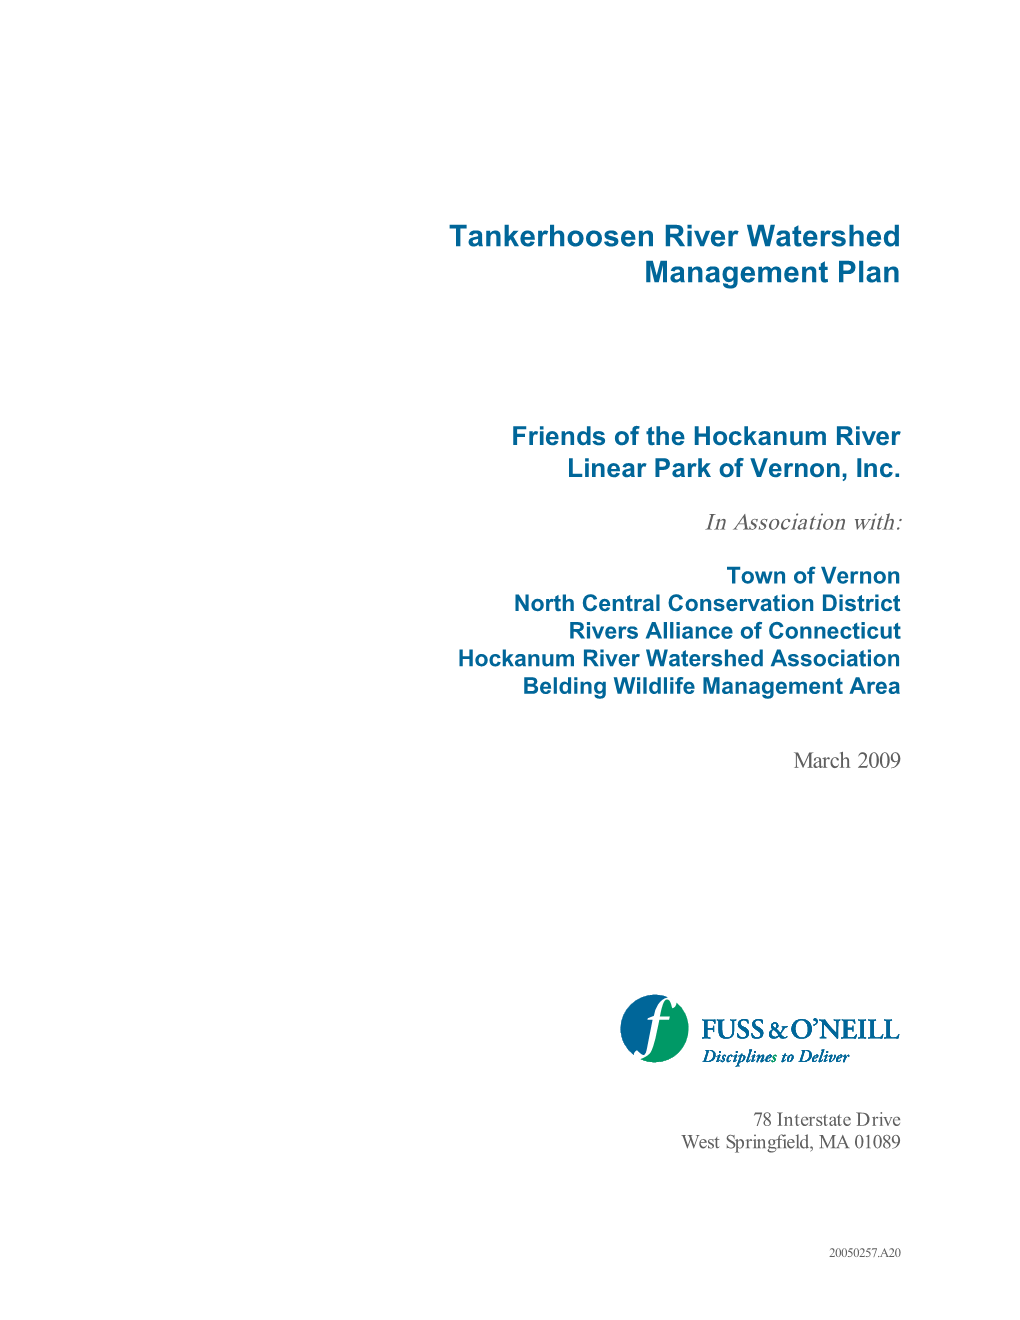 Tankerhoosen River Watershed Management Plan